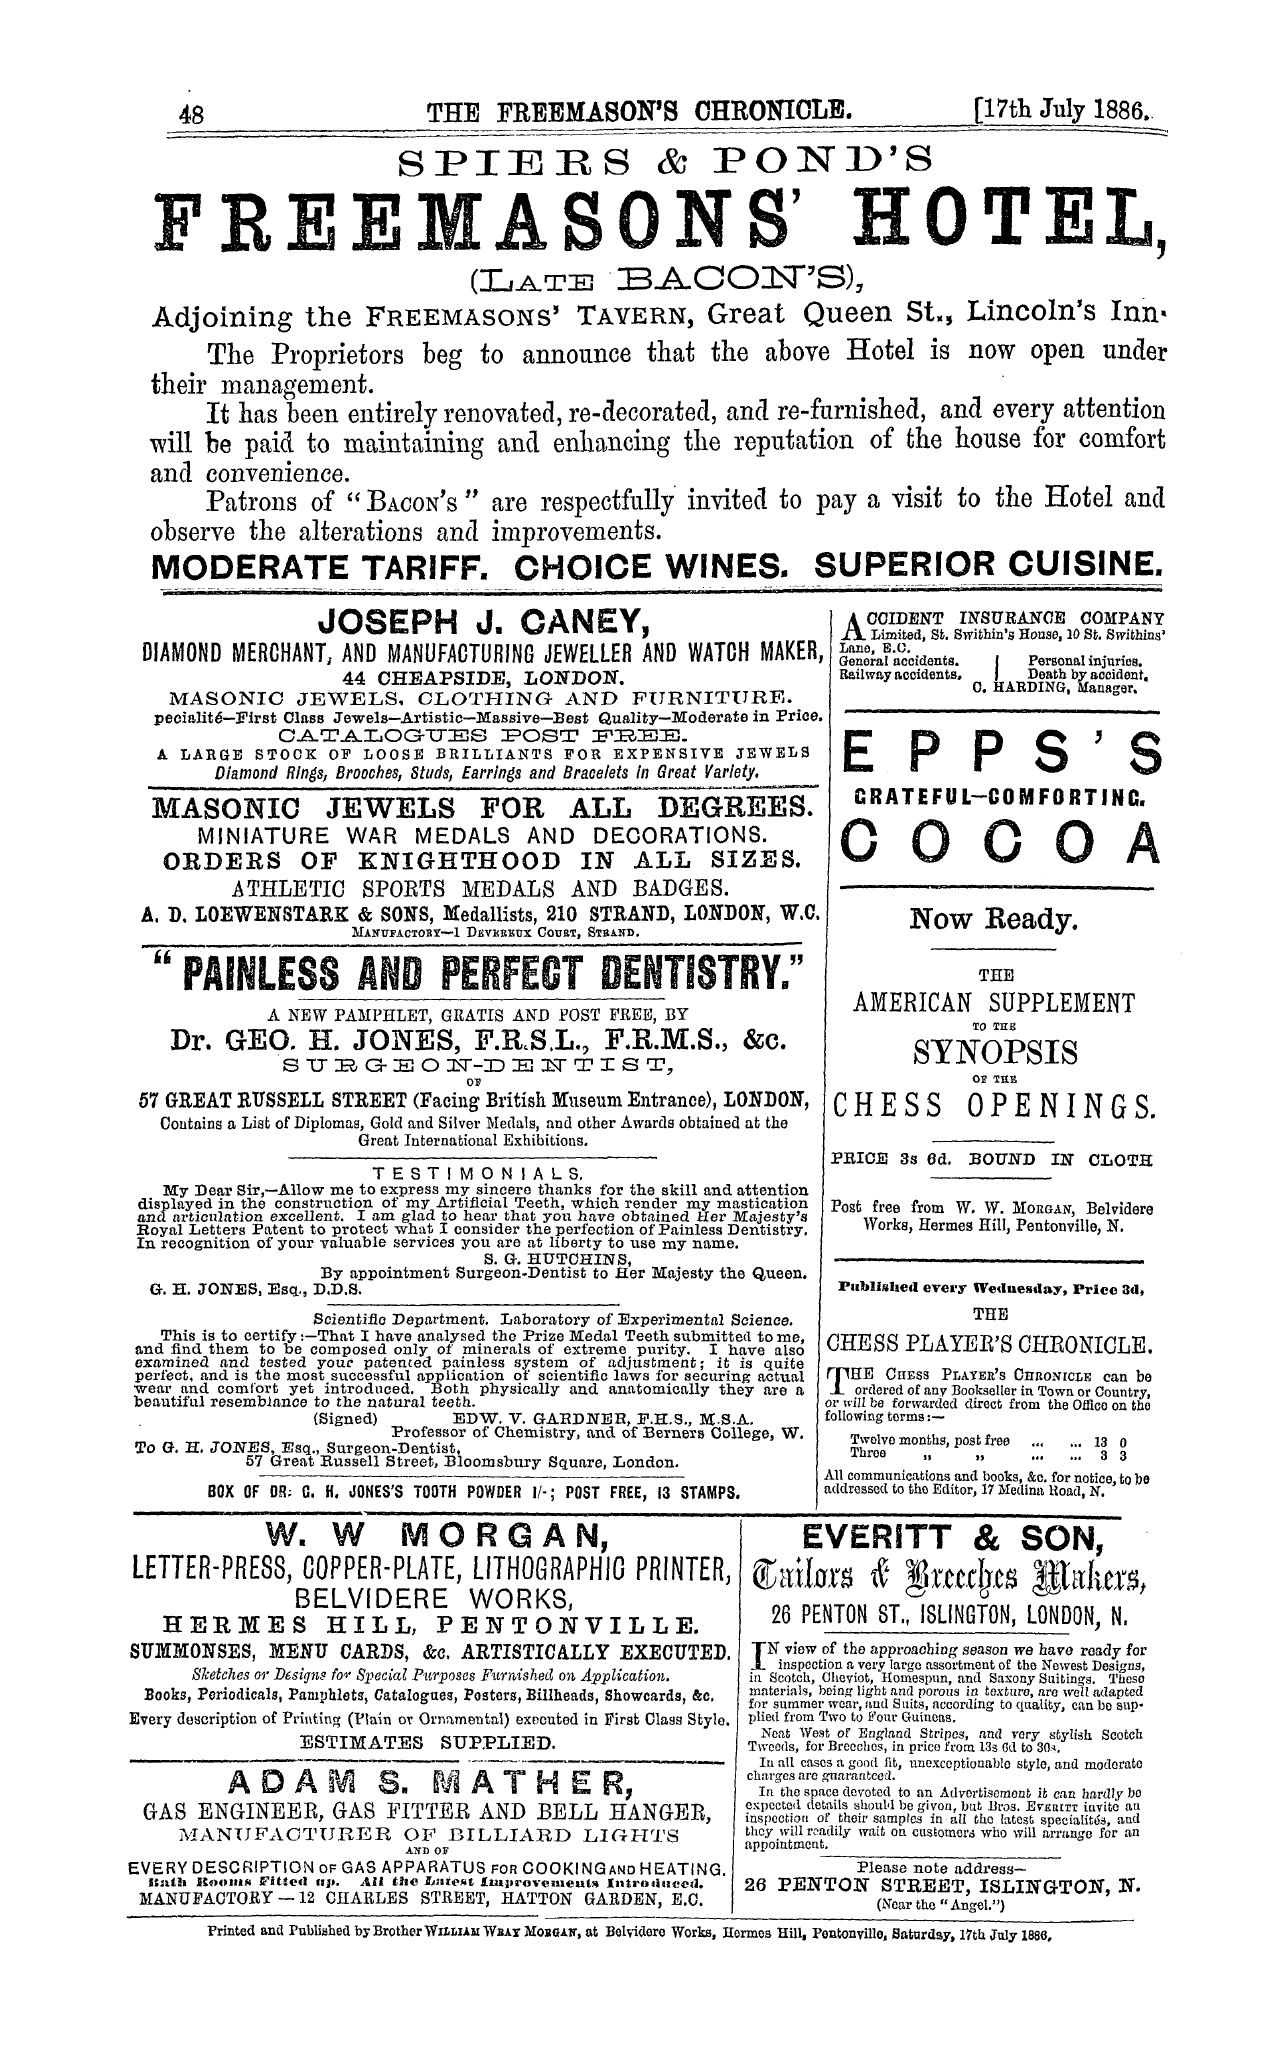 The Freemason's Chronicle: 1886-07-17 - Ar01600